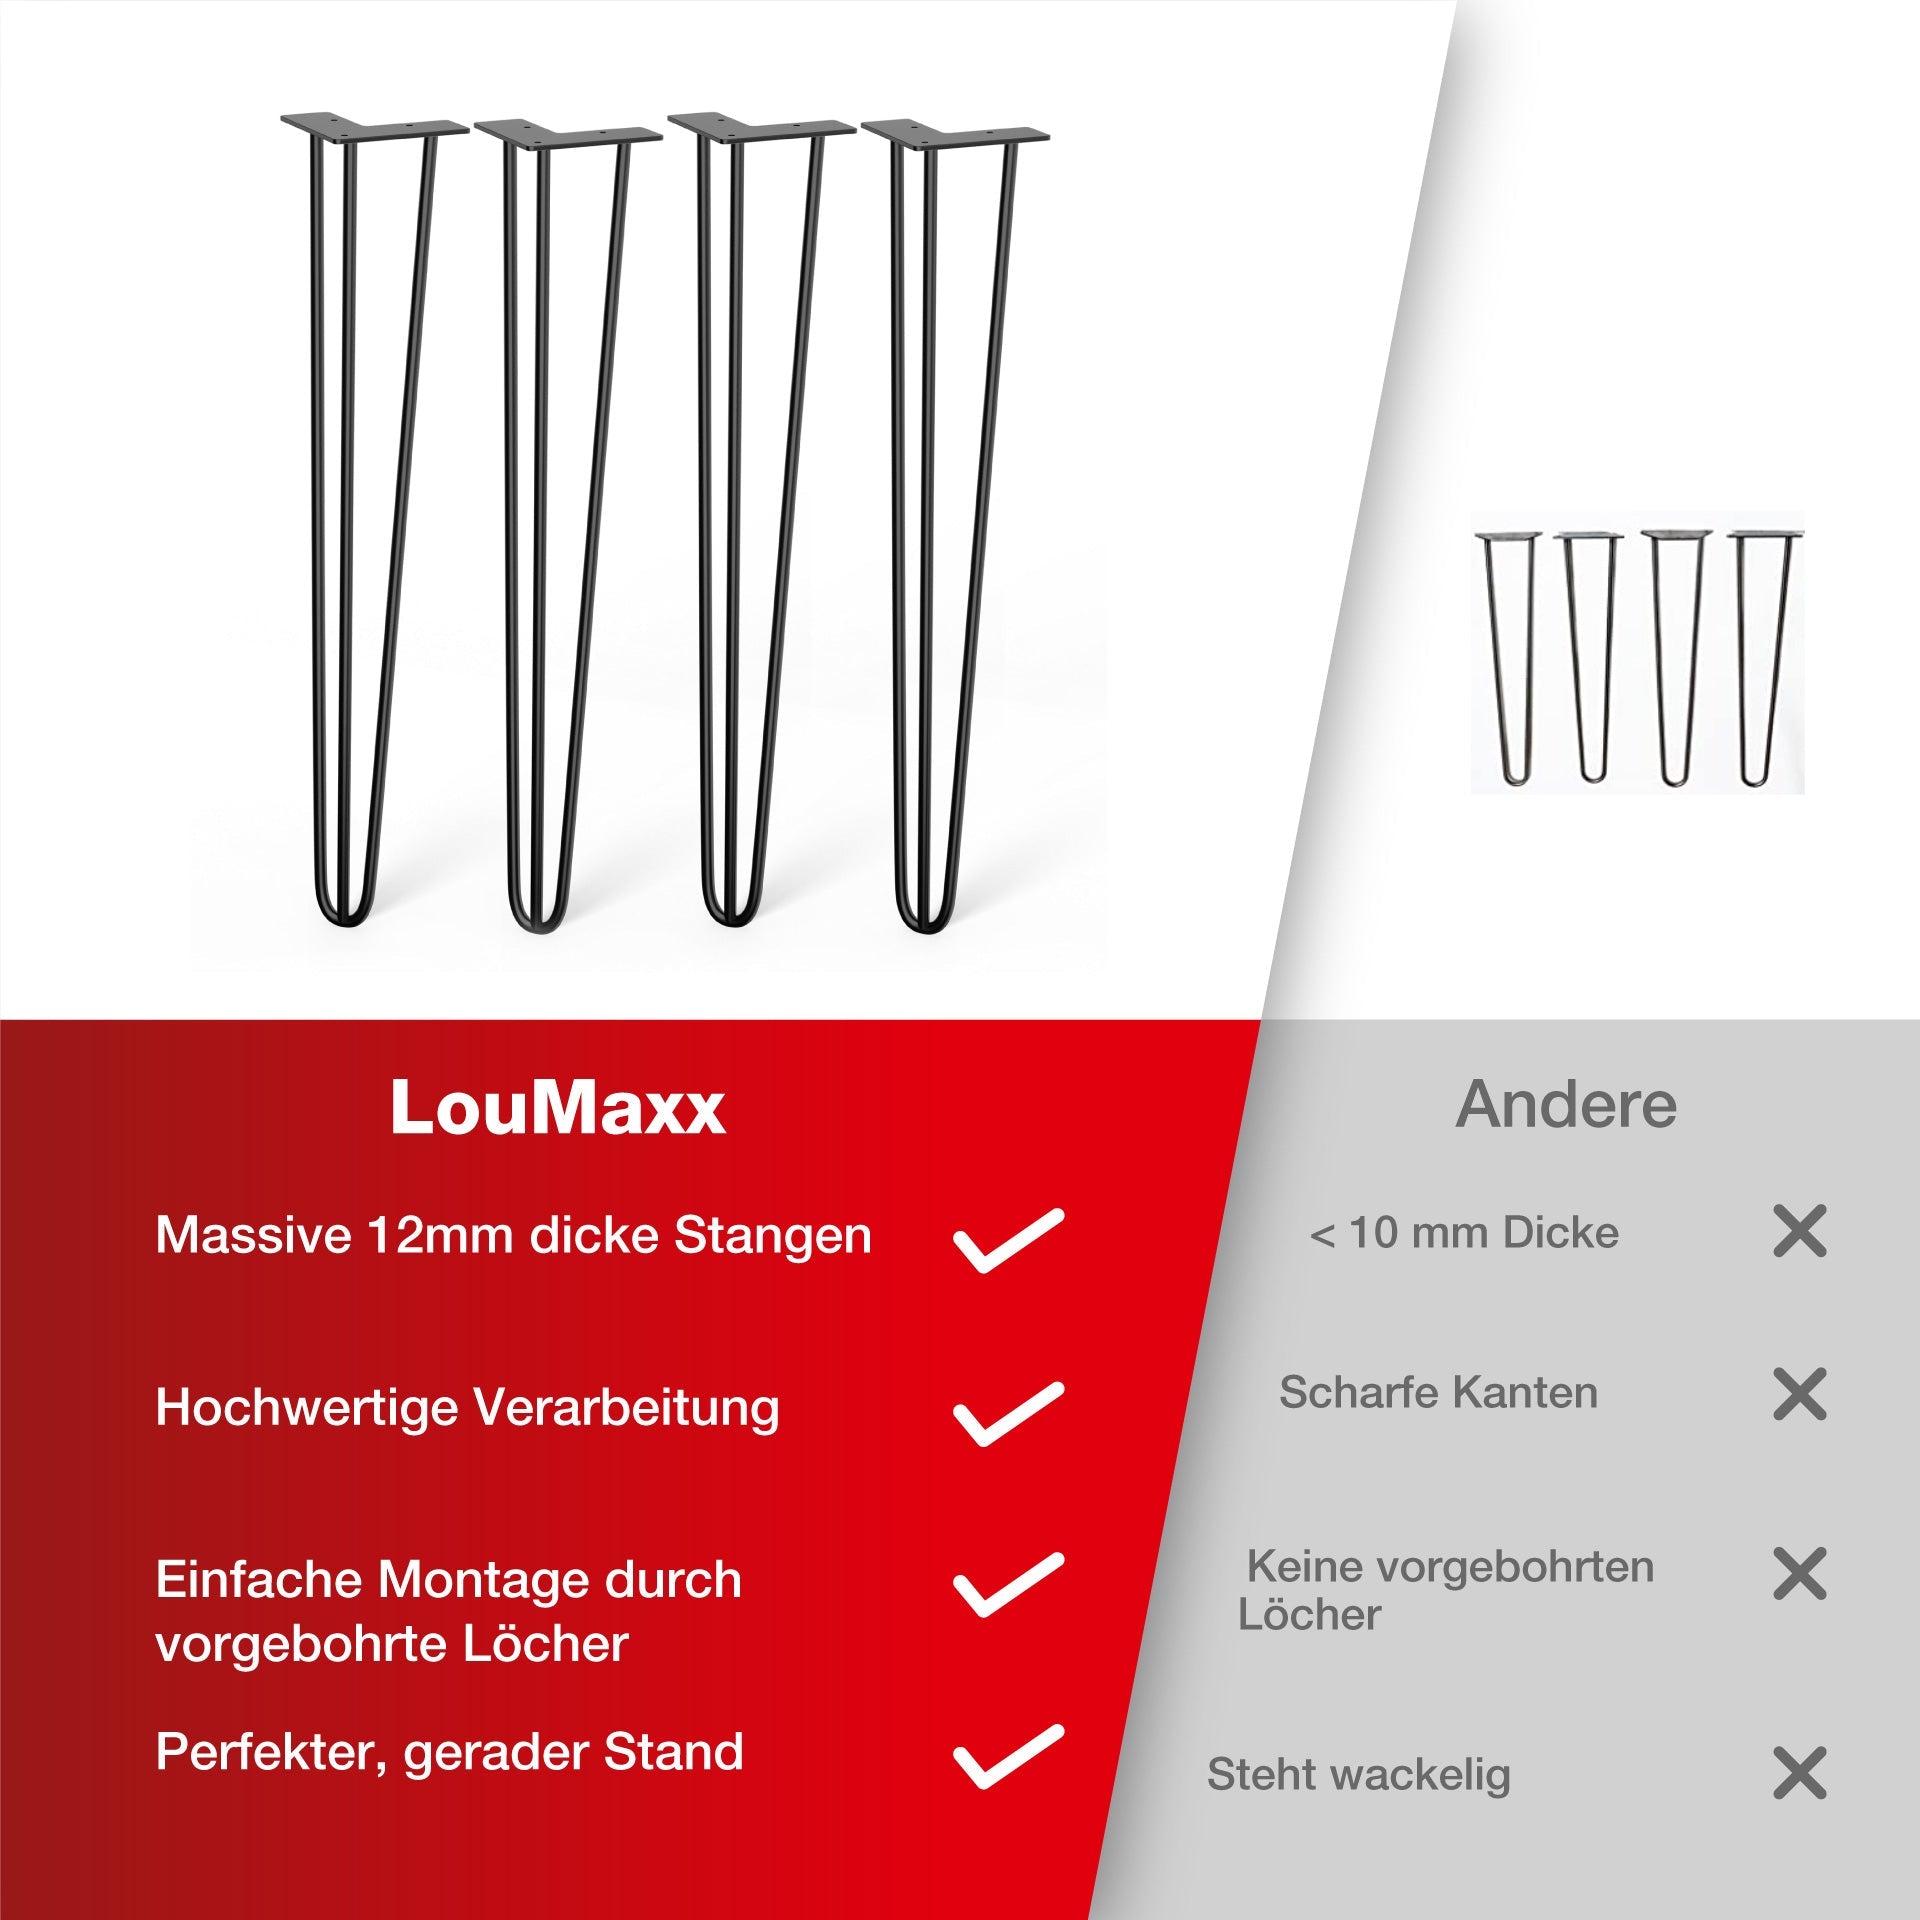 LouMaxx Tischbeine Metall Schwarz – 4 Stück – 200mm Höhe - 10mm Rundstahl, Hochwertiges 3-Stangen Tischbein für jeden Einsatzzweck inkl. Schrauben und Bodenschoner